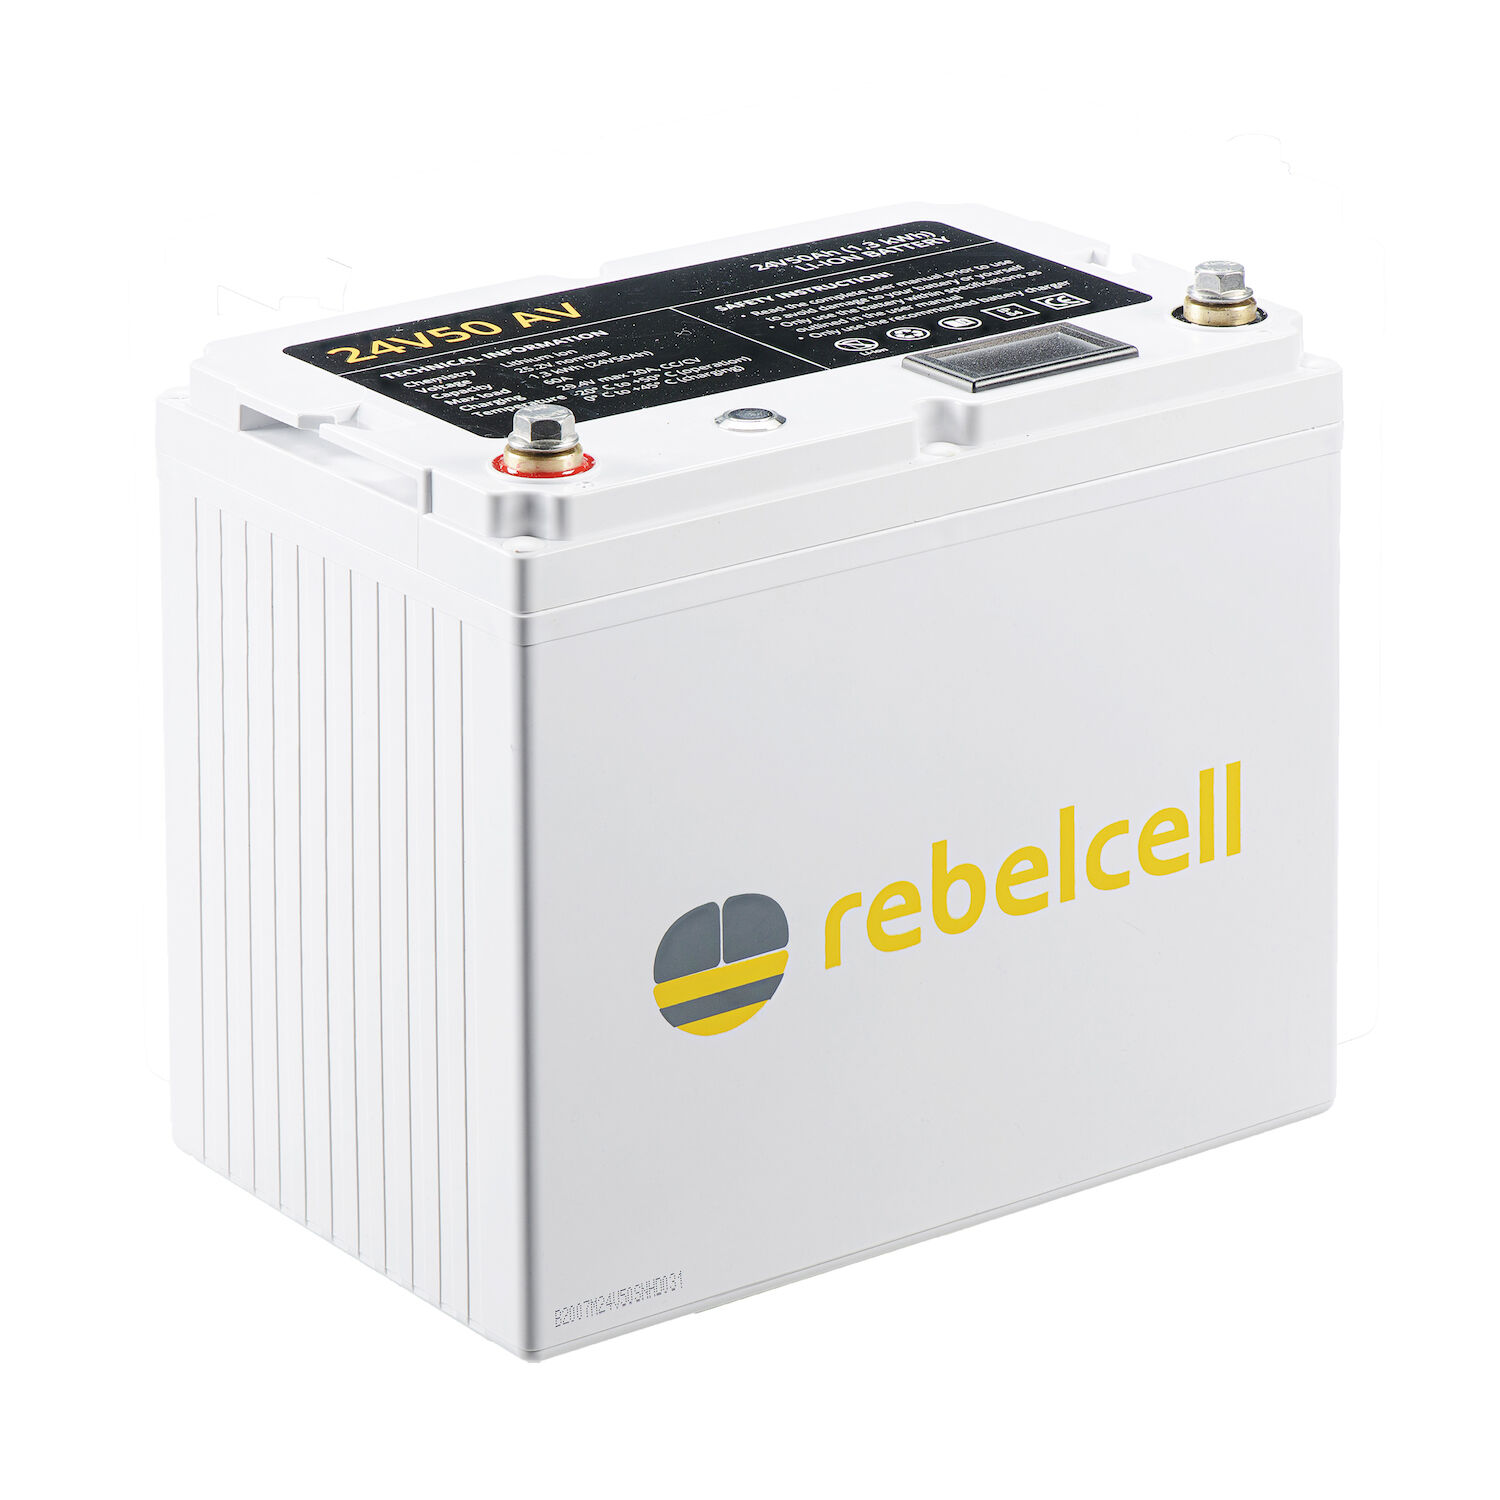 RebelCell 24V50 Lithium Batterie (24V 50Ah) 1,25kWh